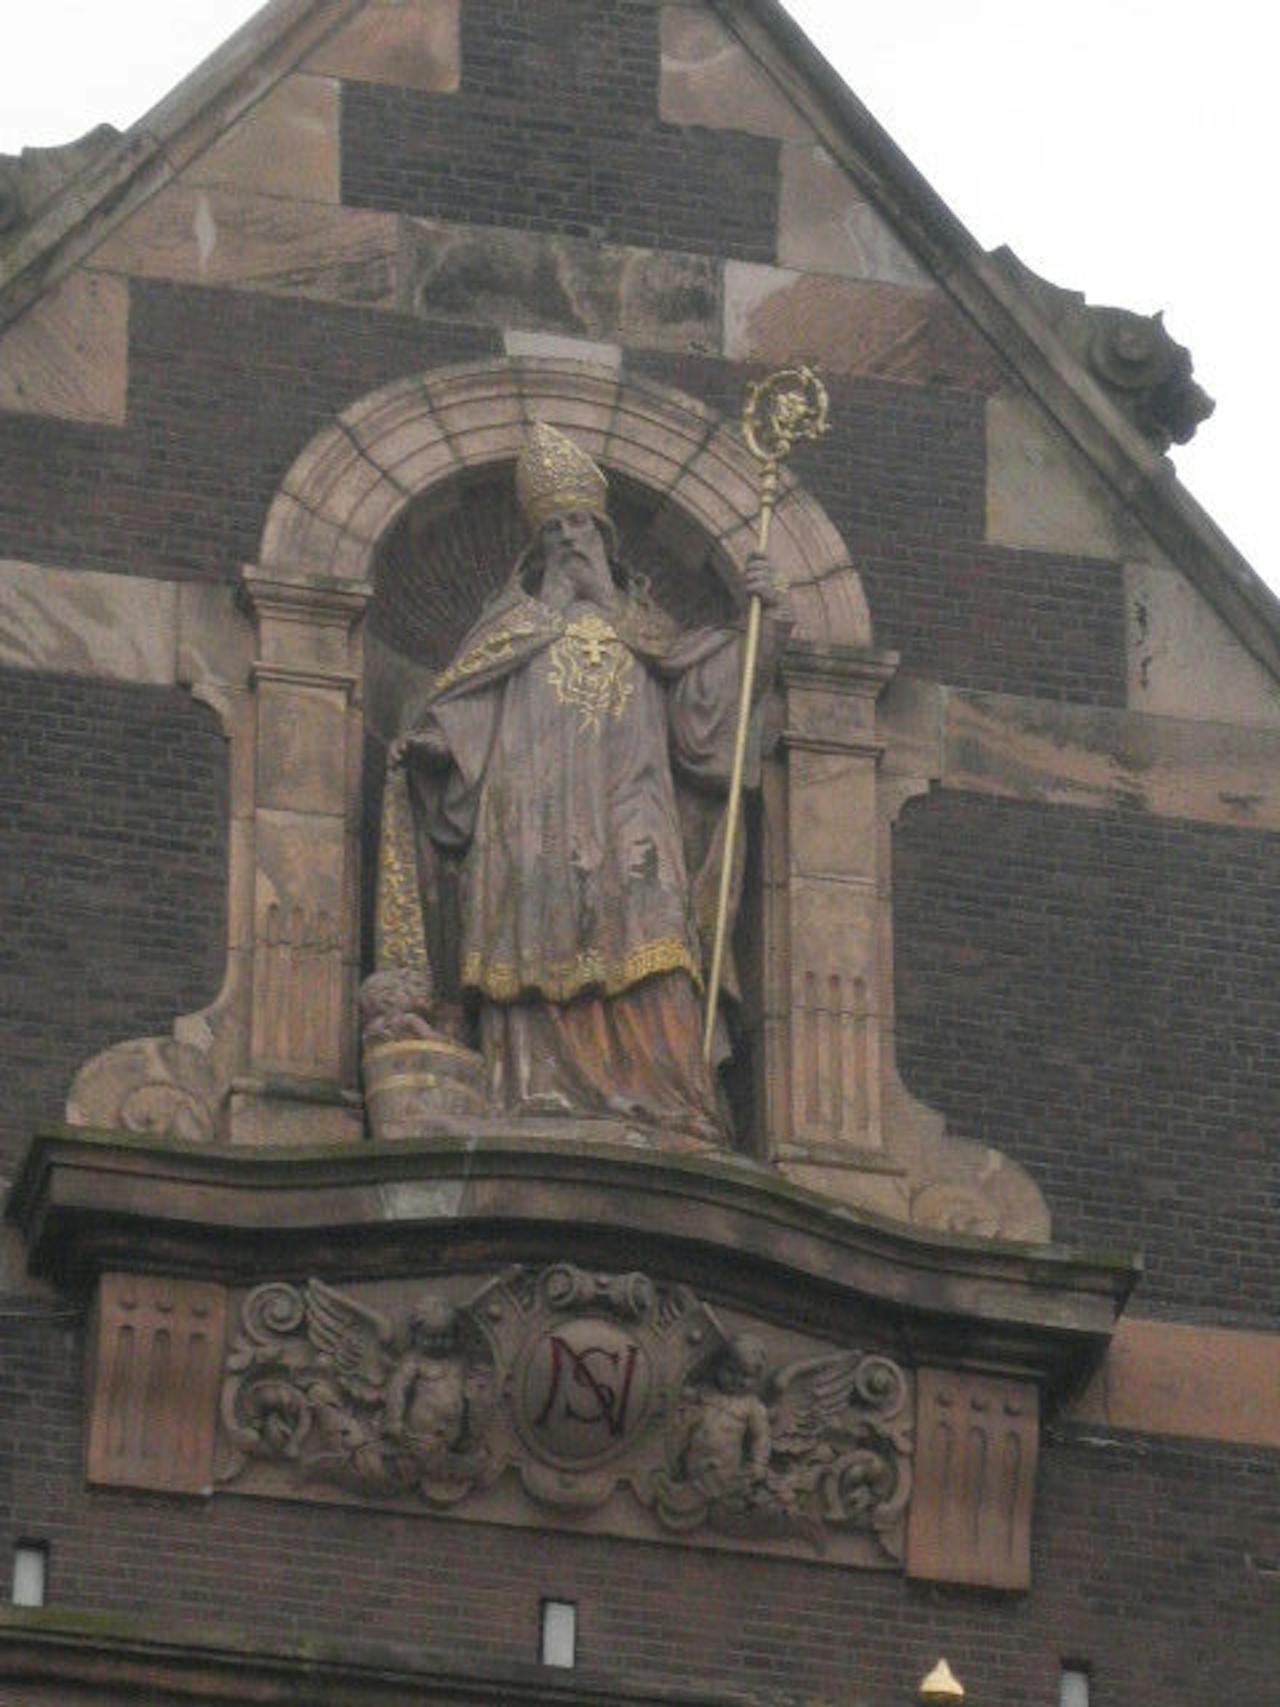 Sint Nicolaas standbeeld op de Sint Nicolaaskerk in het centrum van Amsterdam.